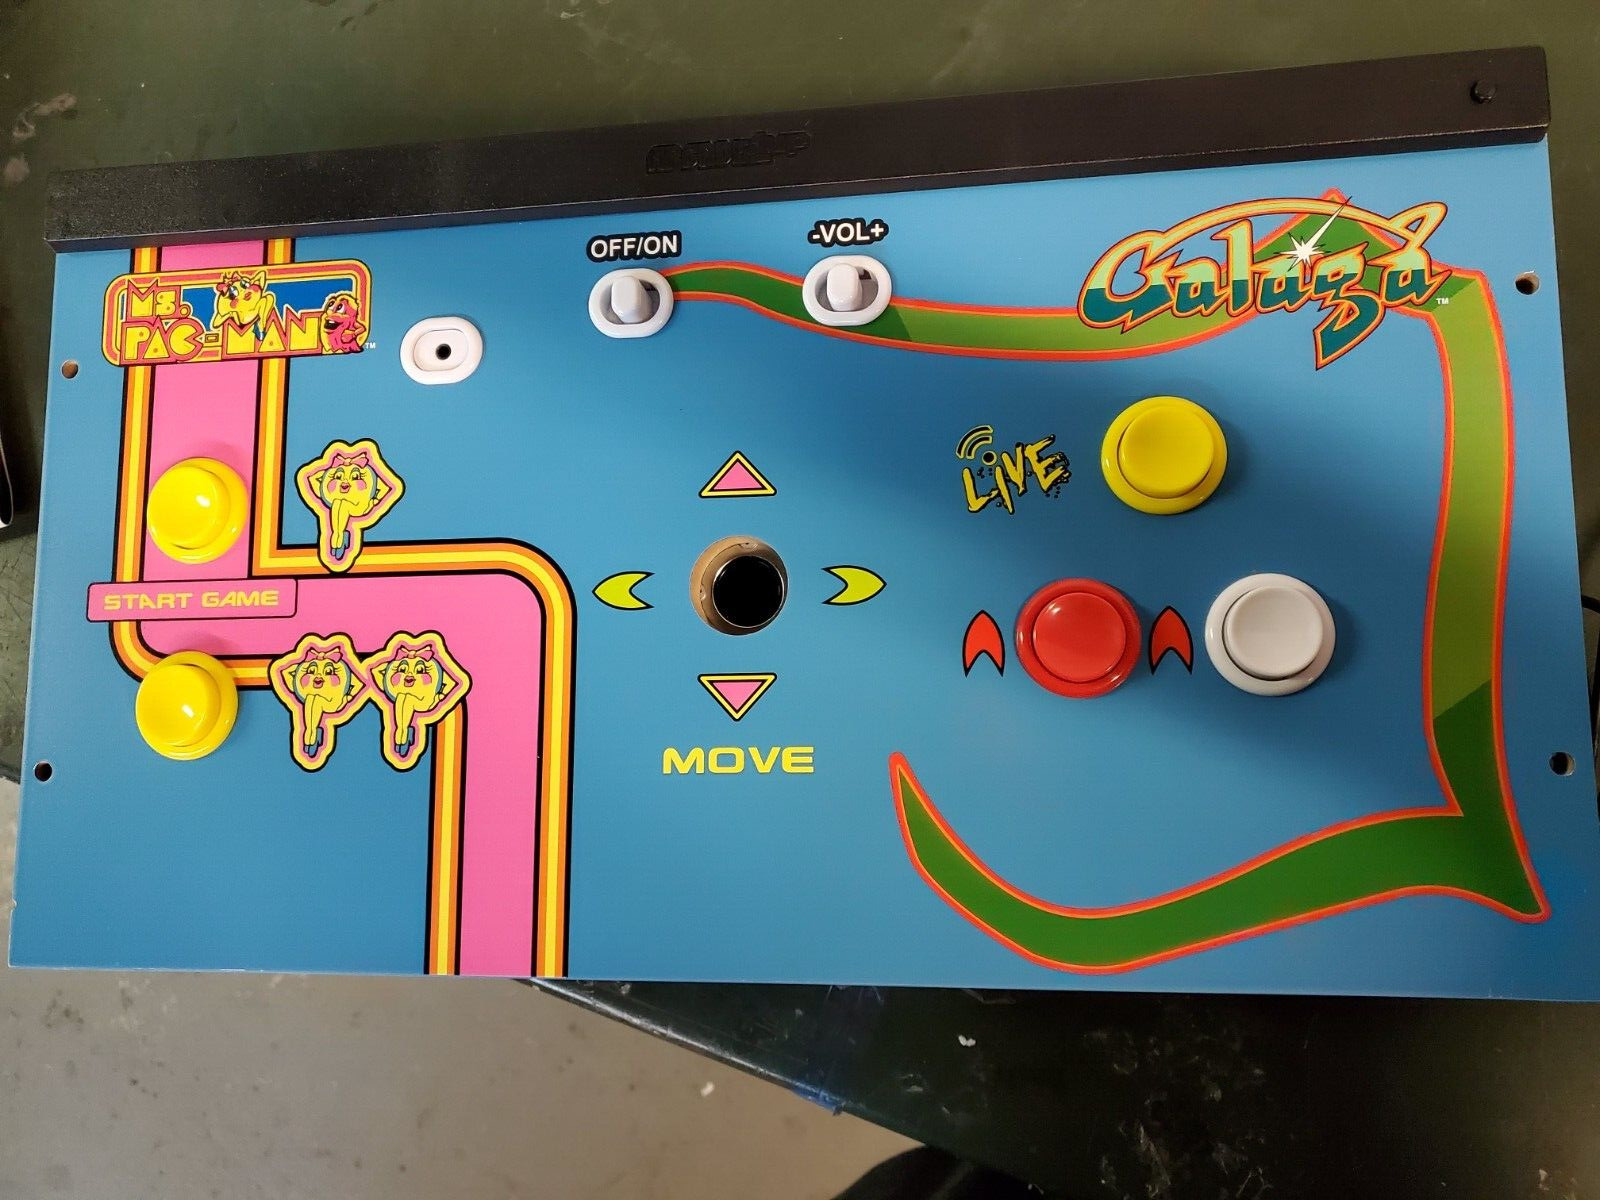 Arcade1Up  MS Pacman / Galaga Arcade Machine Joystick  Broken